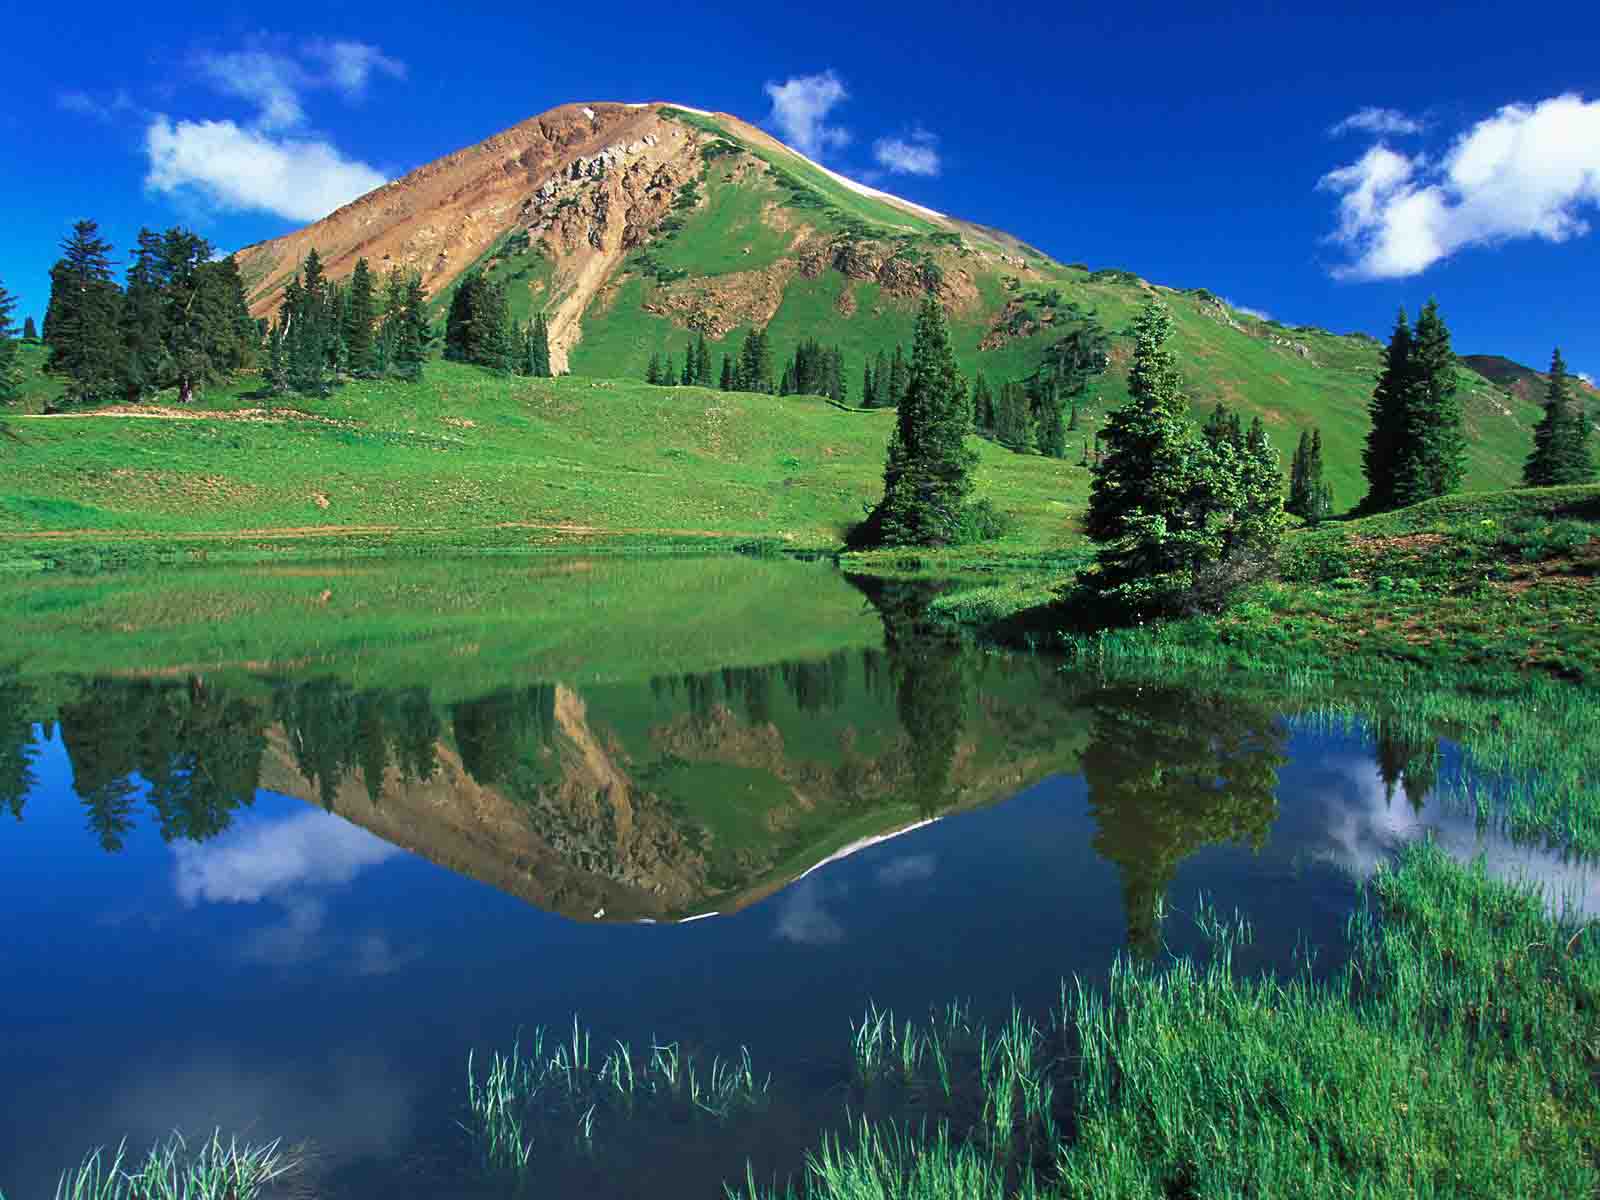 عکس زمینه شاهکار از انعکاس کوه و درختان درون چشمه آبی زلال